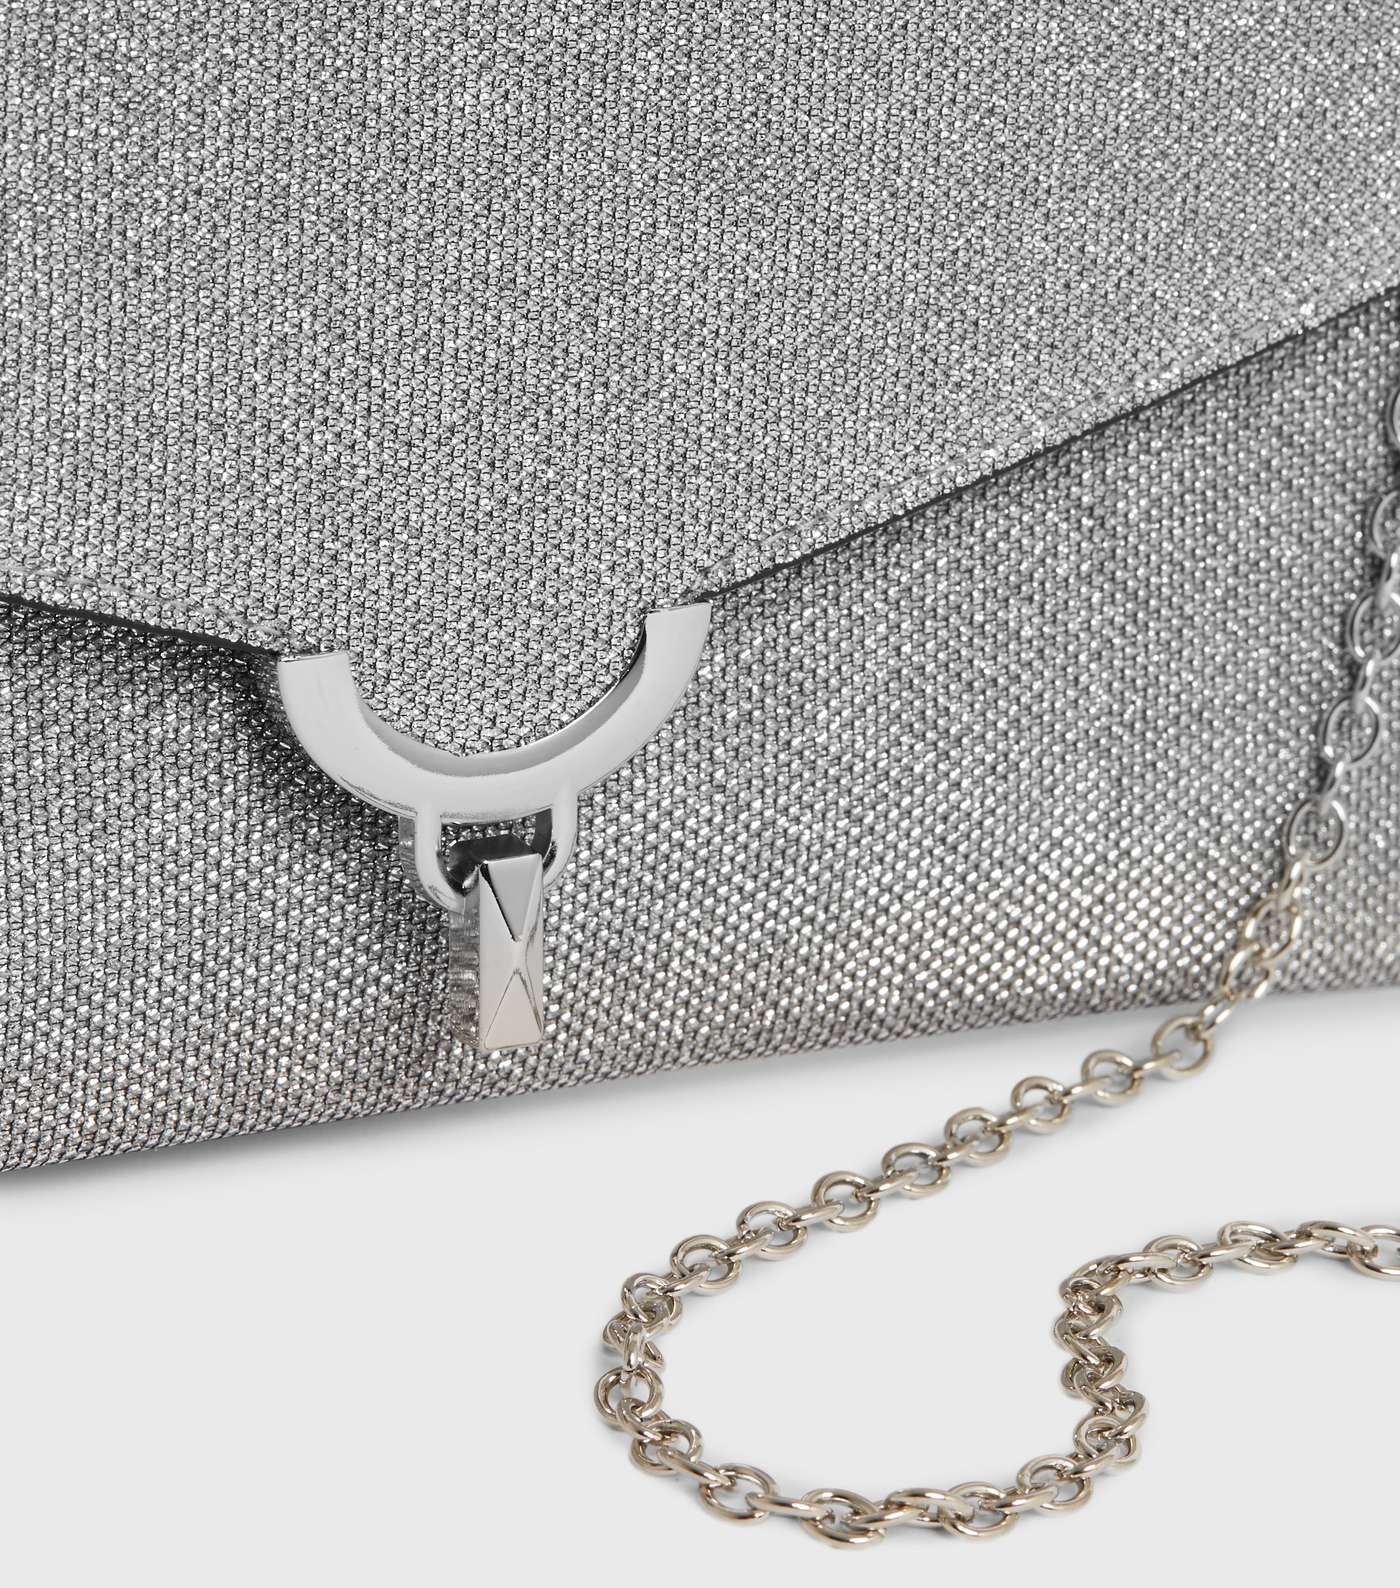 Silver Glitter Clutch Bag Image 2